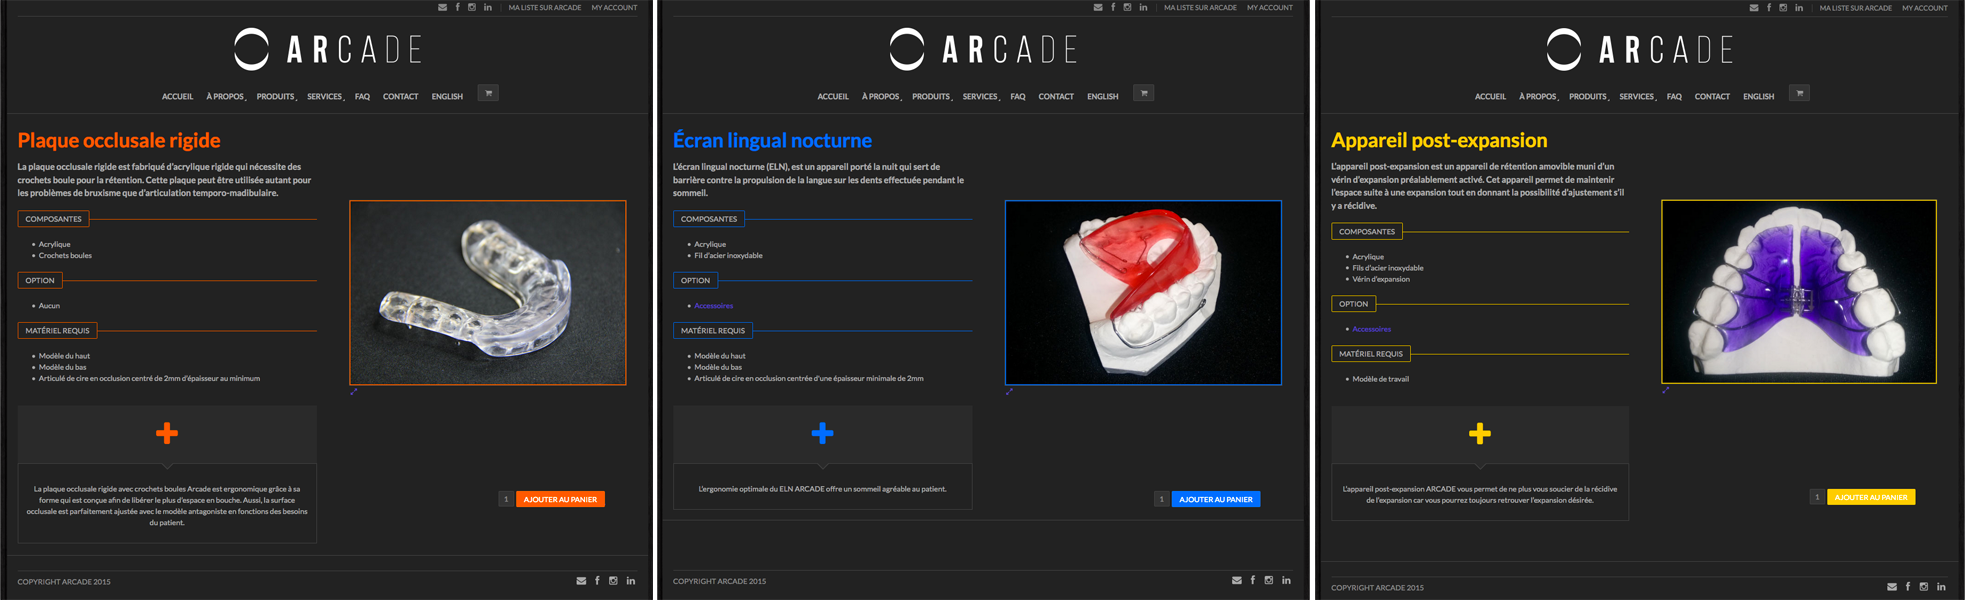 Agitatrice de solutions - Projet Arcade - Web - Vente en ligne - Fiches produits